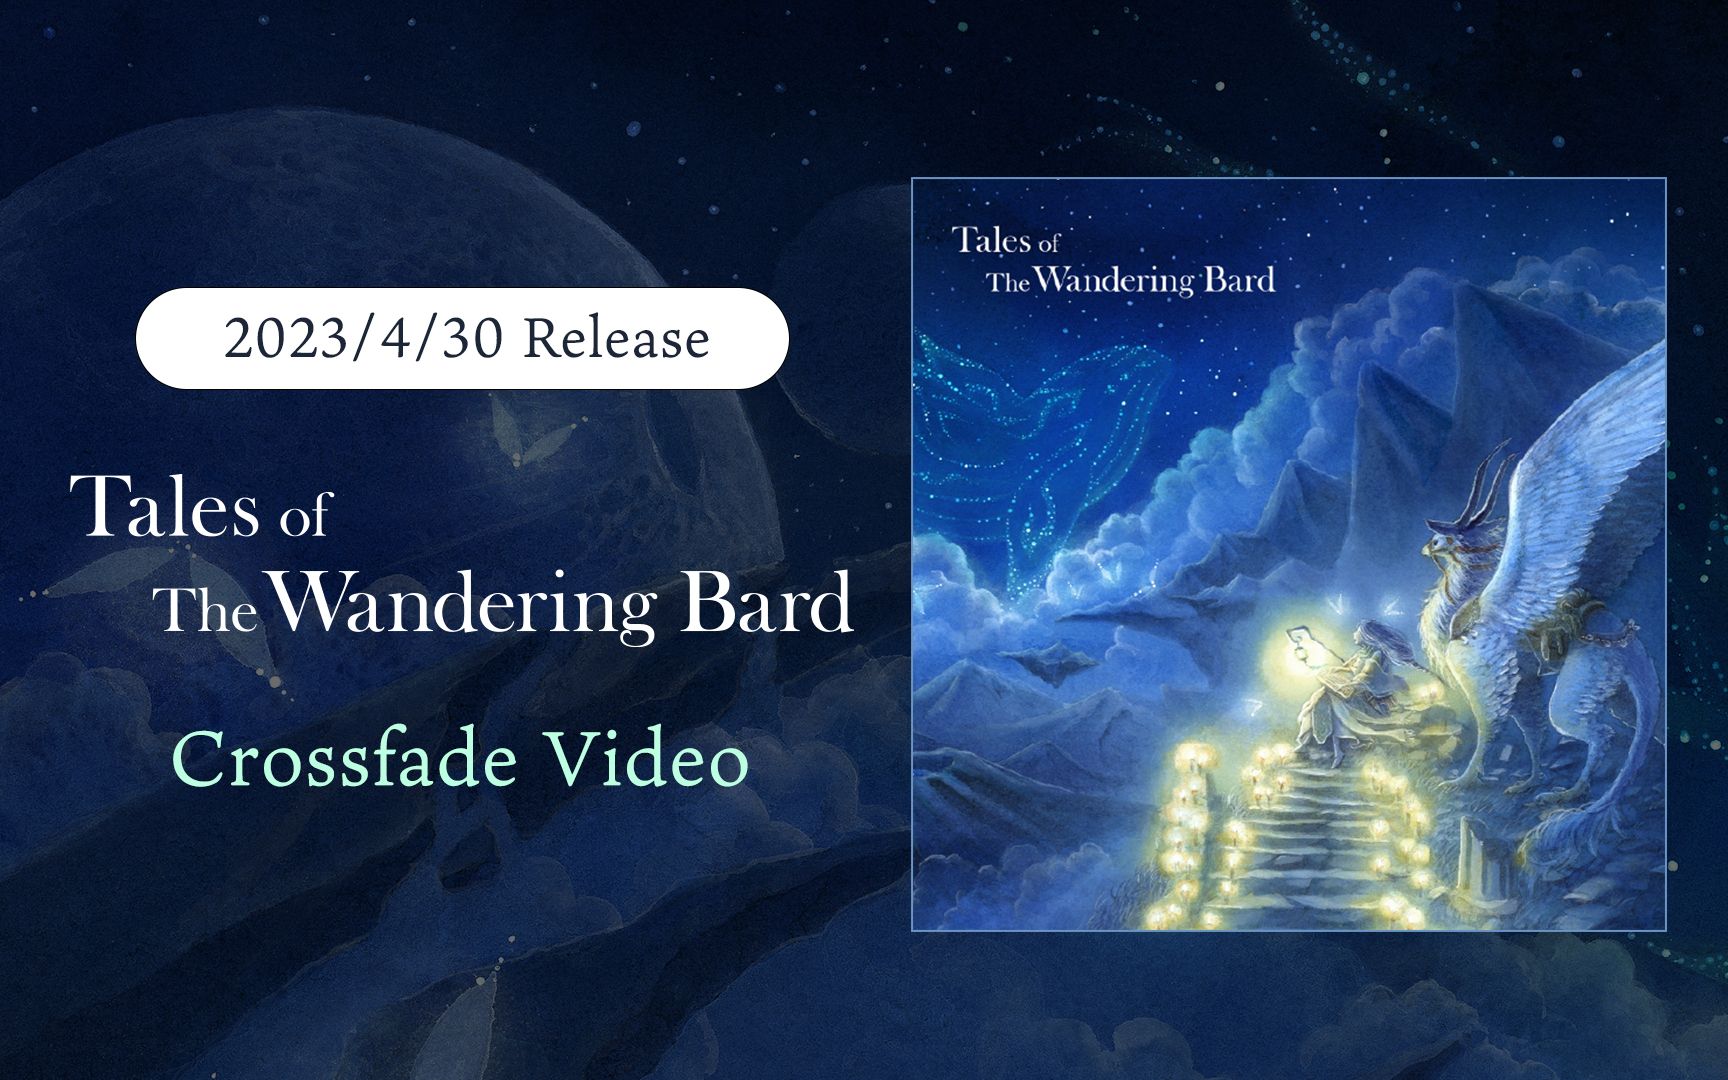 [图]【Xfade video】 Tales of the Wandering Bard 《吟游诗人的故事》 | Fantasy world music